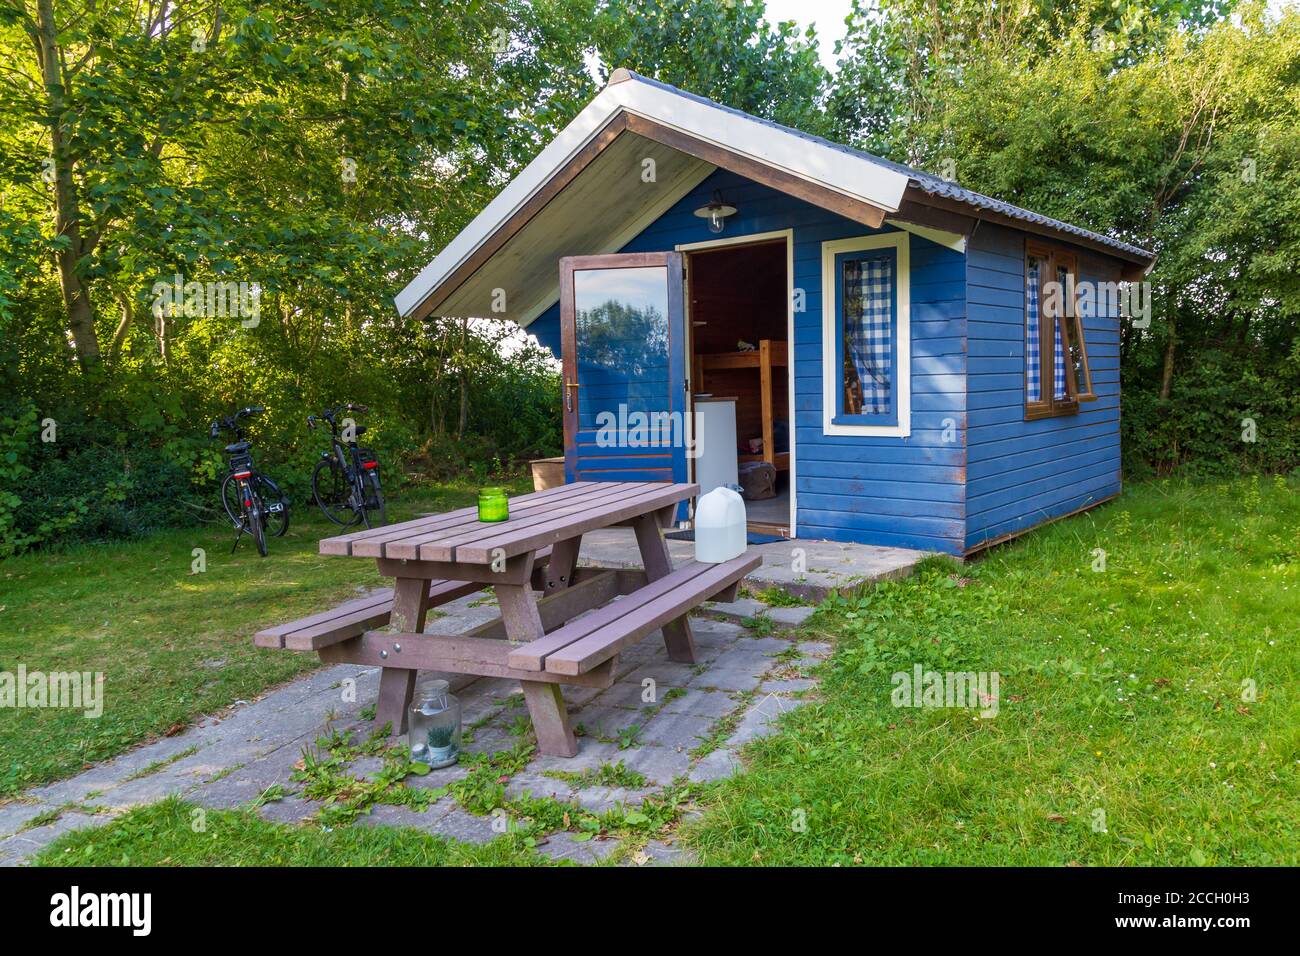 Petite maison d'été confortable en bois bleu entre fleurs et arbres Banque D'Images